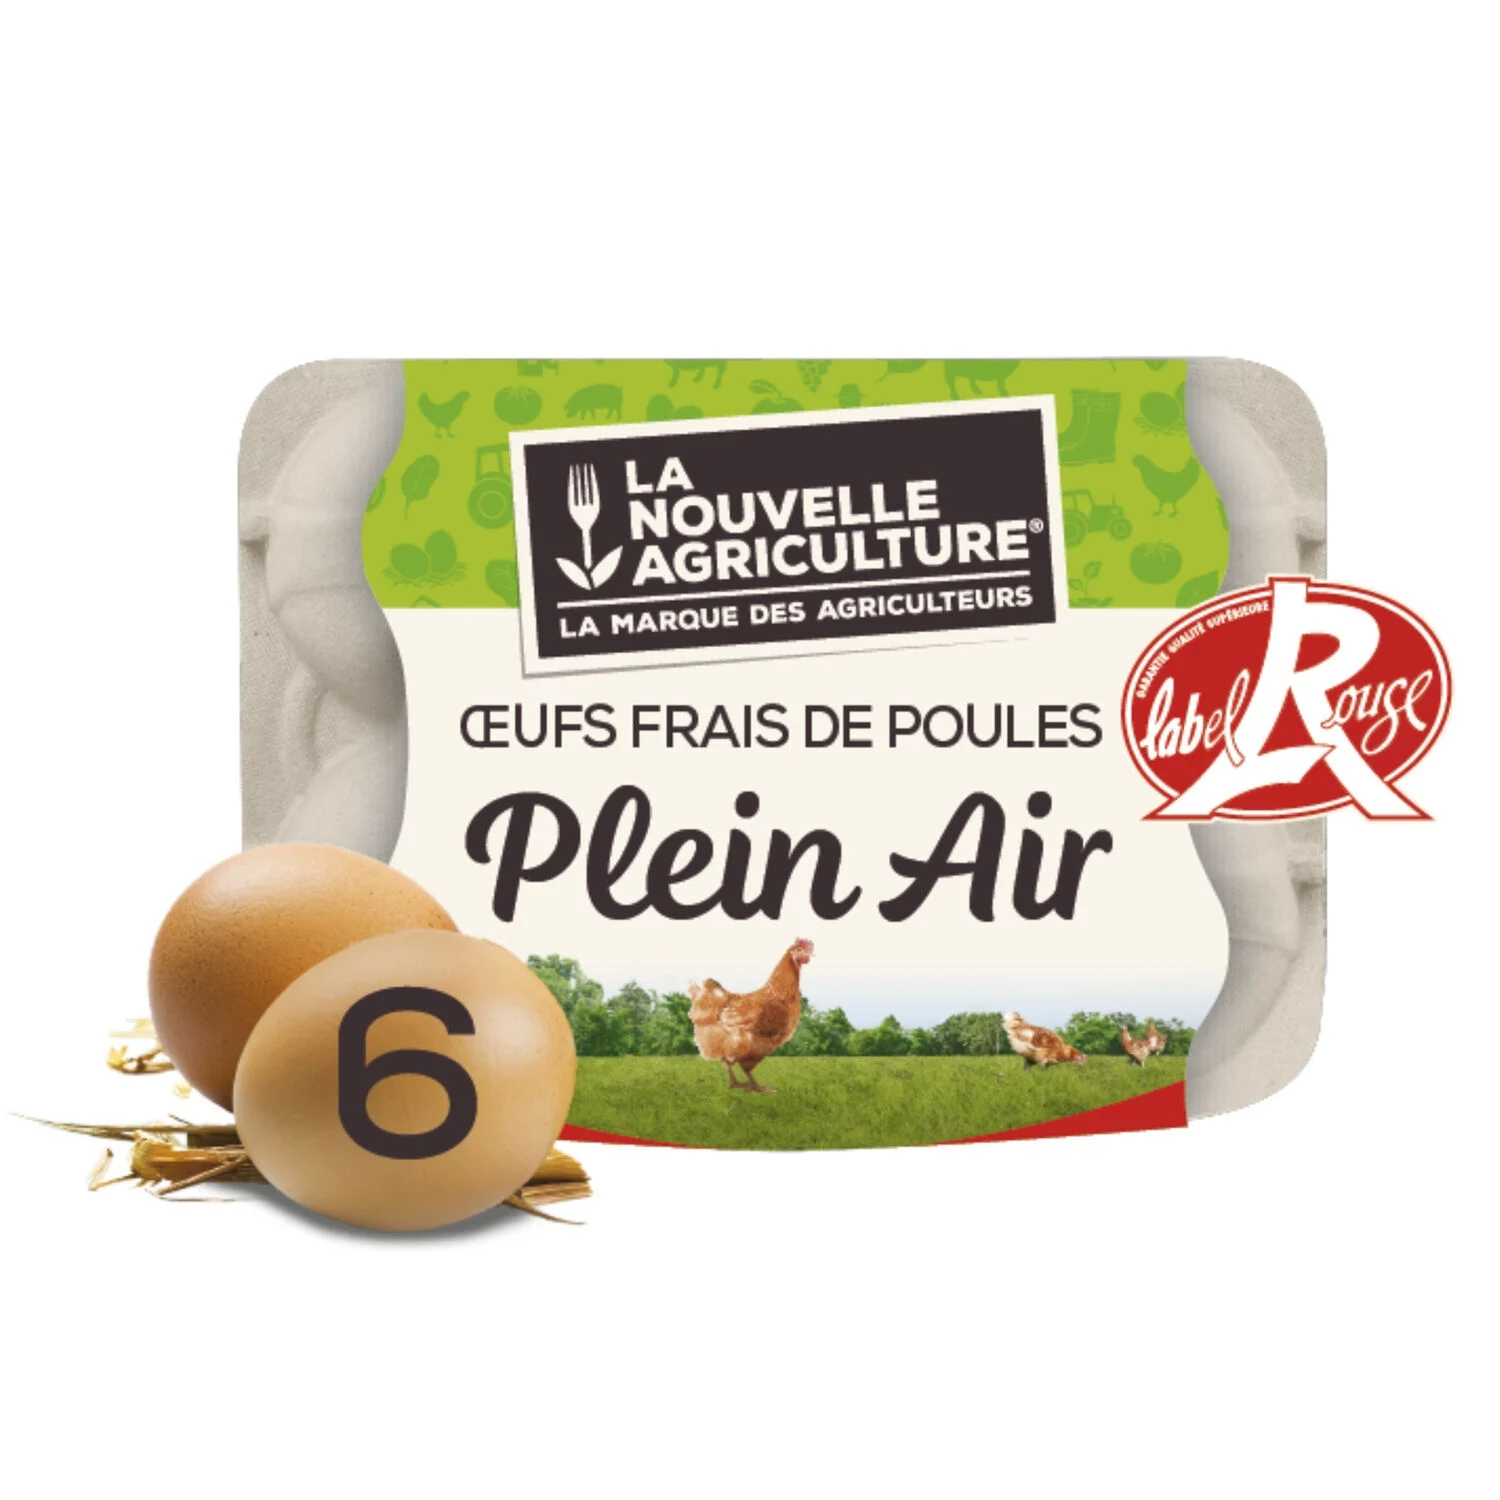 平飼い卵 ラベルルージュX6 - La Nouvelle Agriculture